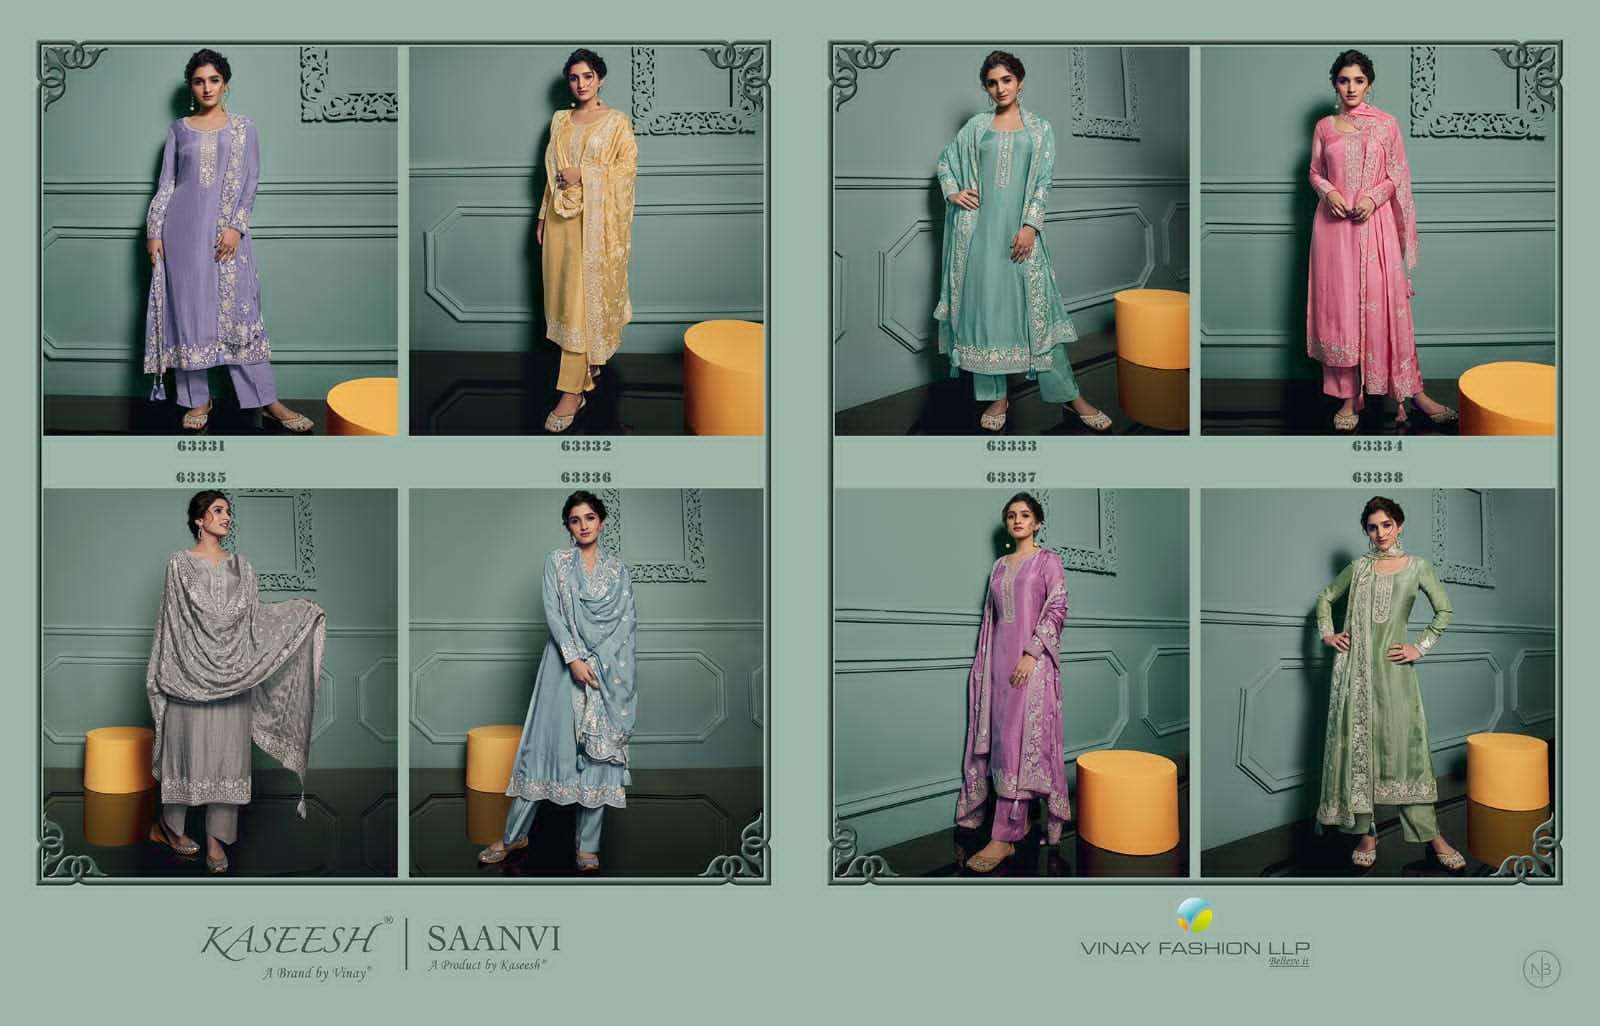 vinay fashion saanvi 63331-63338 series party wear salwar suits catalogue manufacturer surat